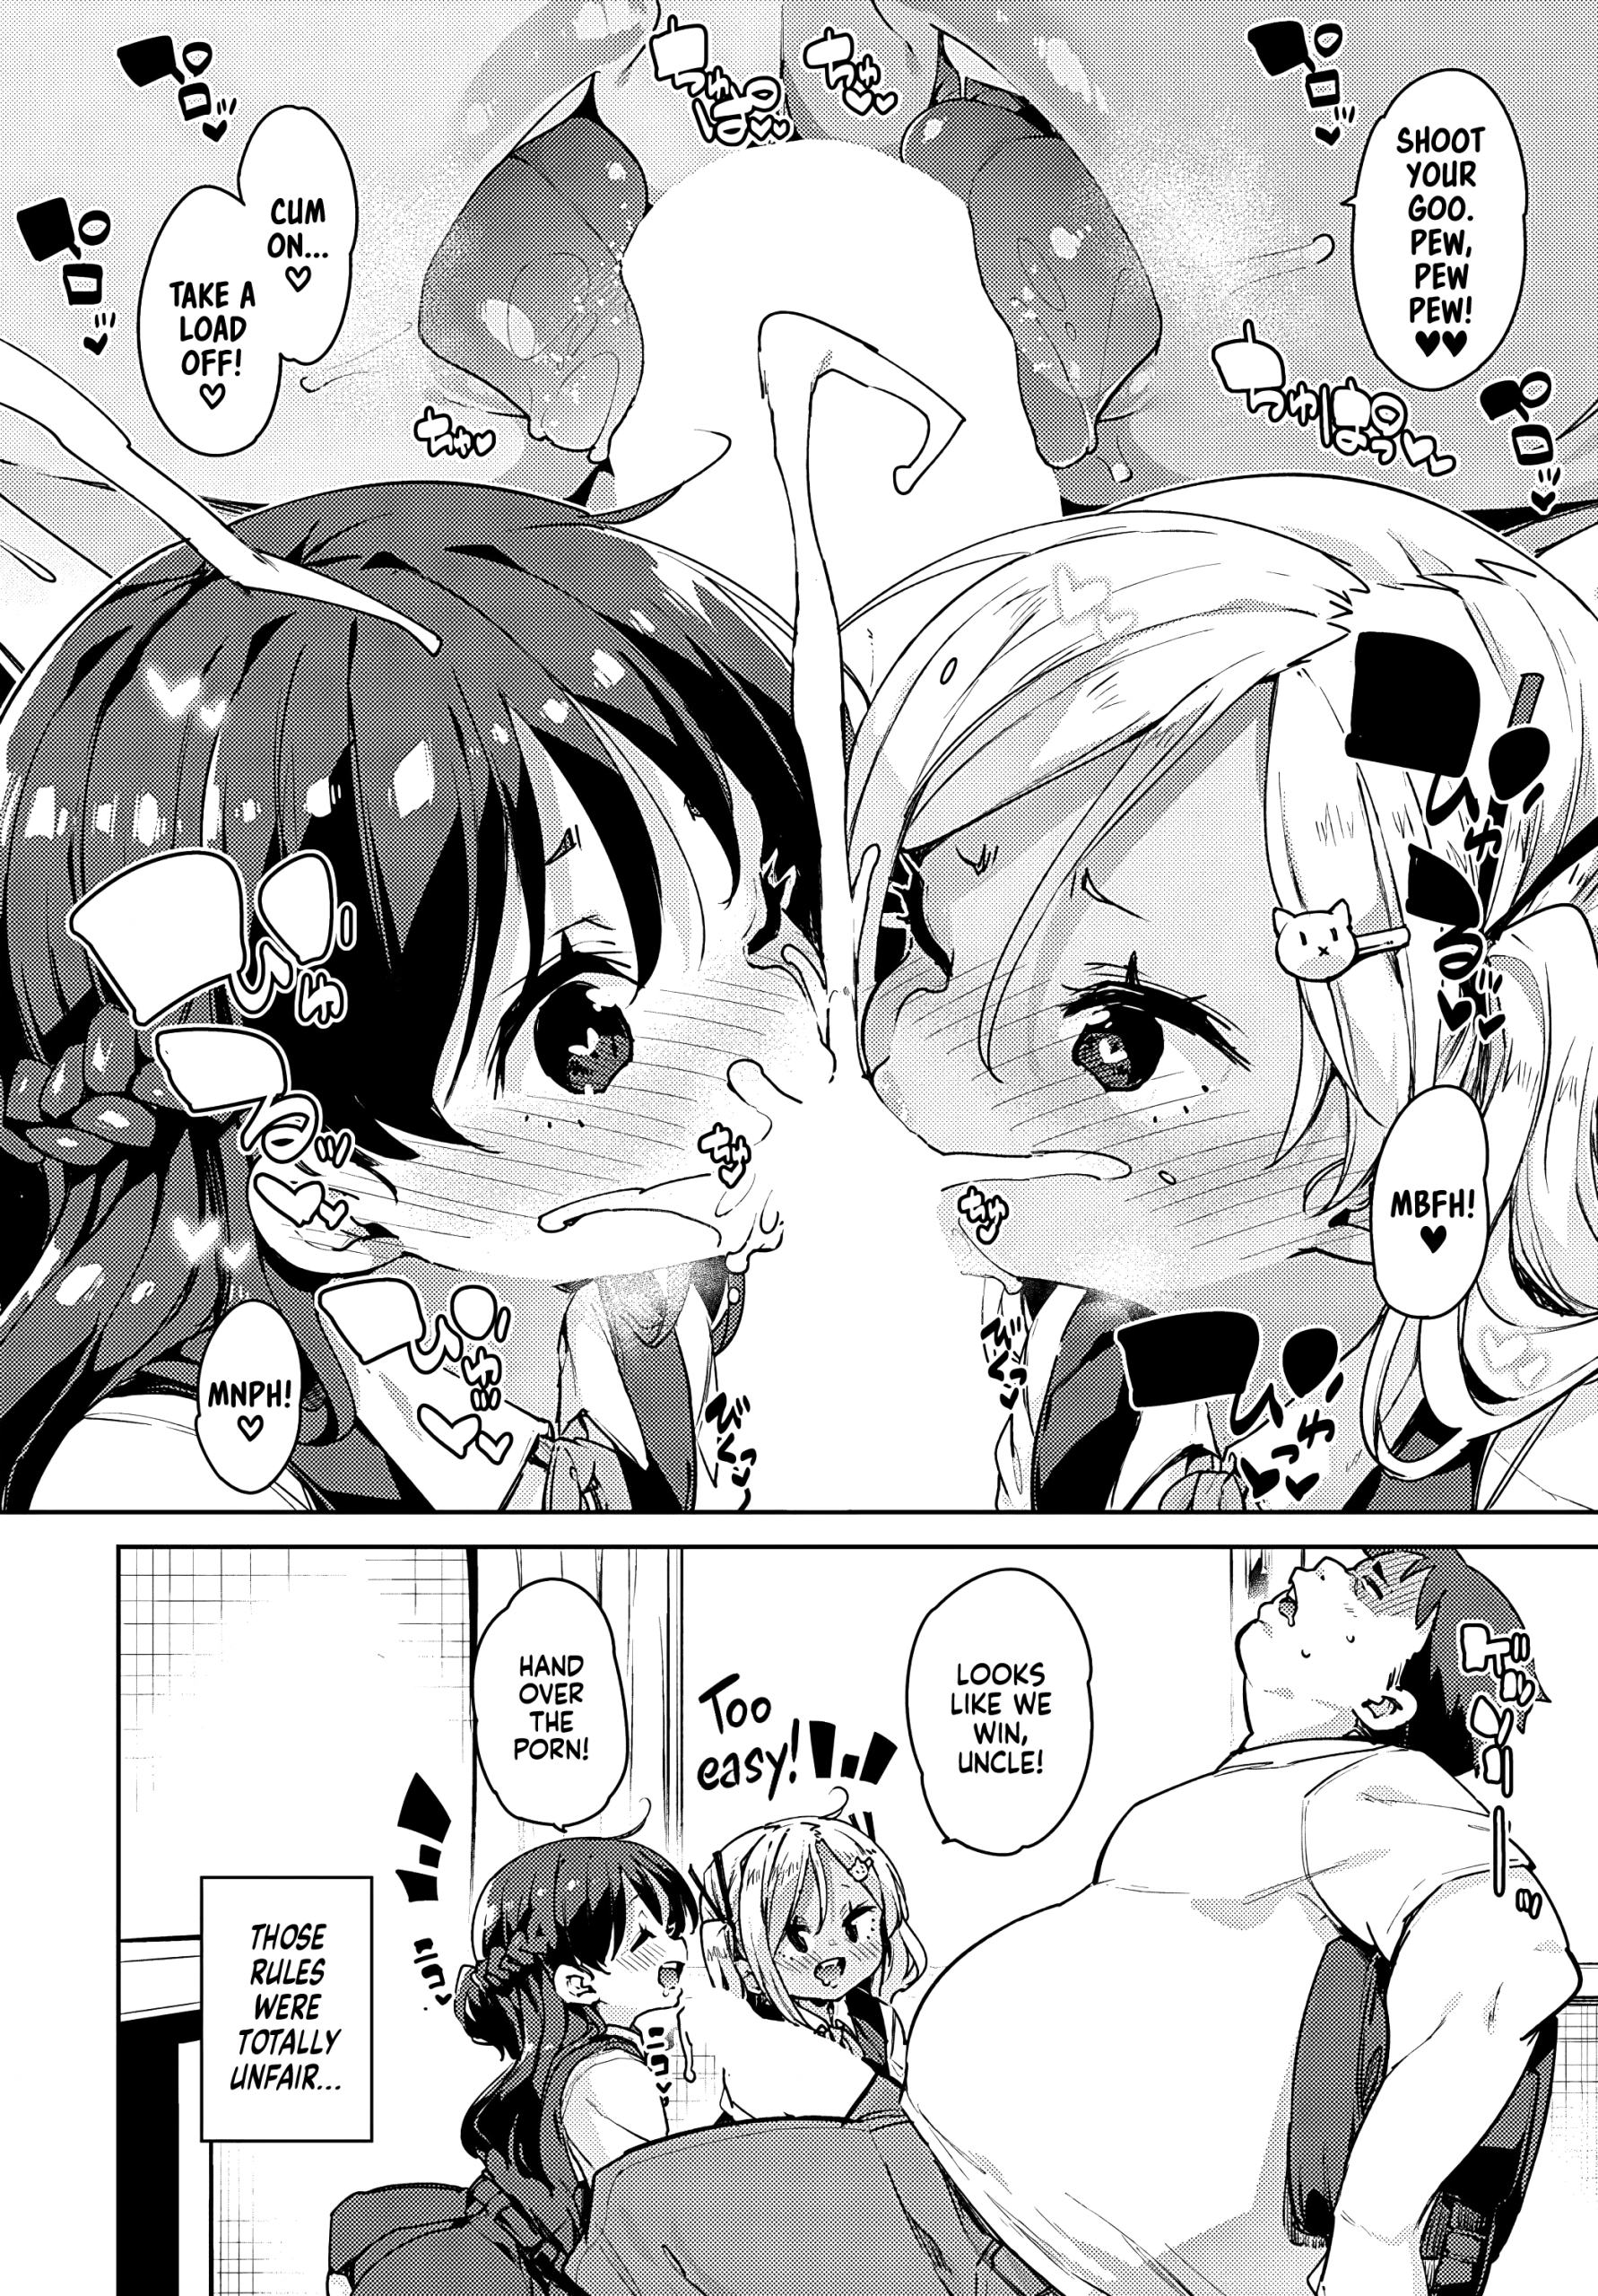 Naughty Development Diary 1-2 hentai manga picture 8